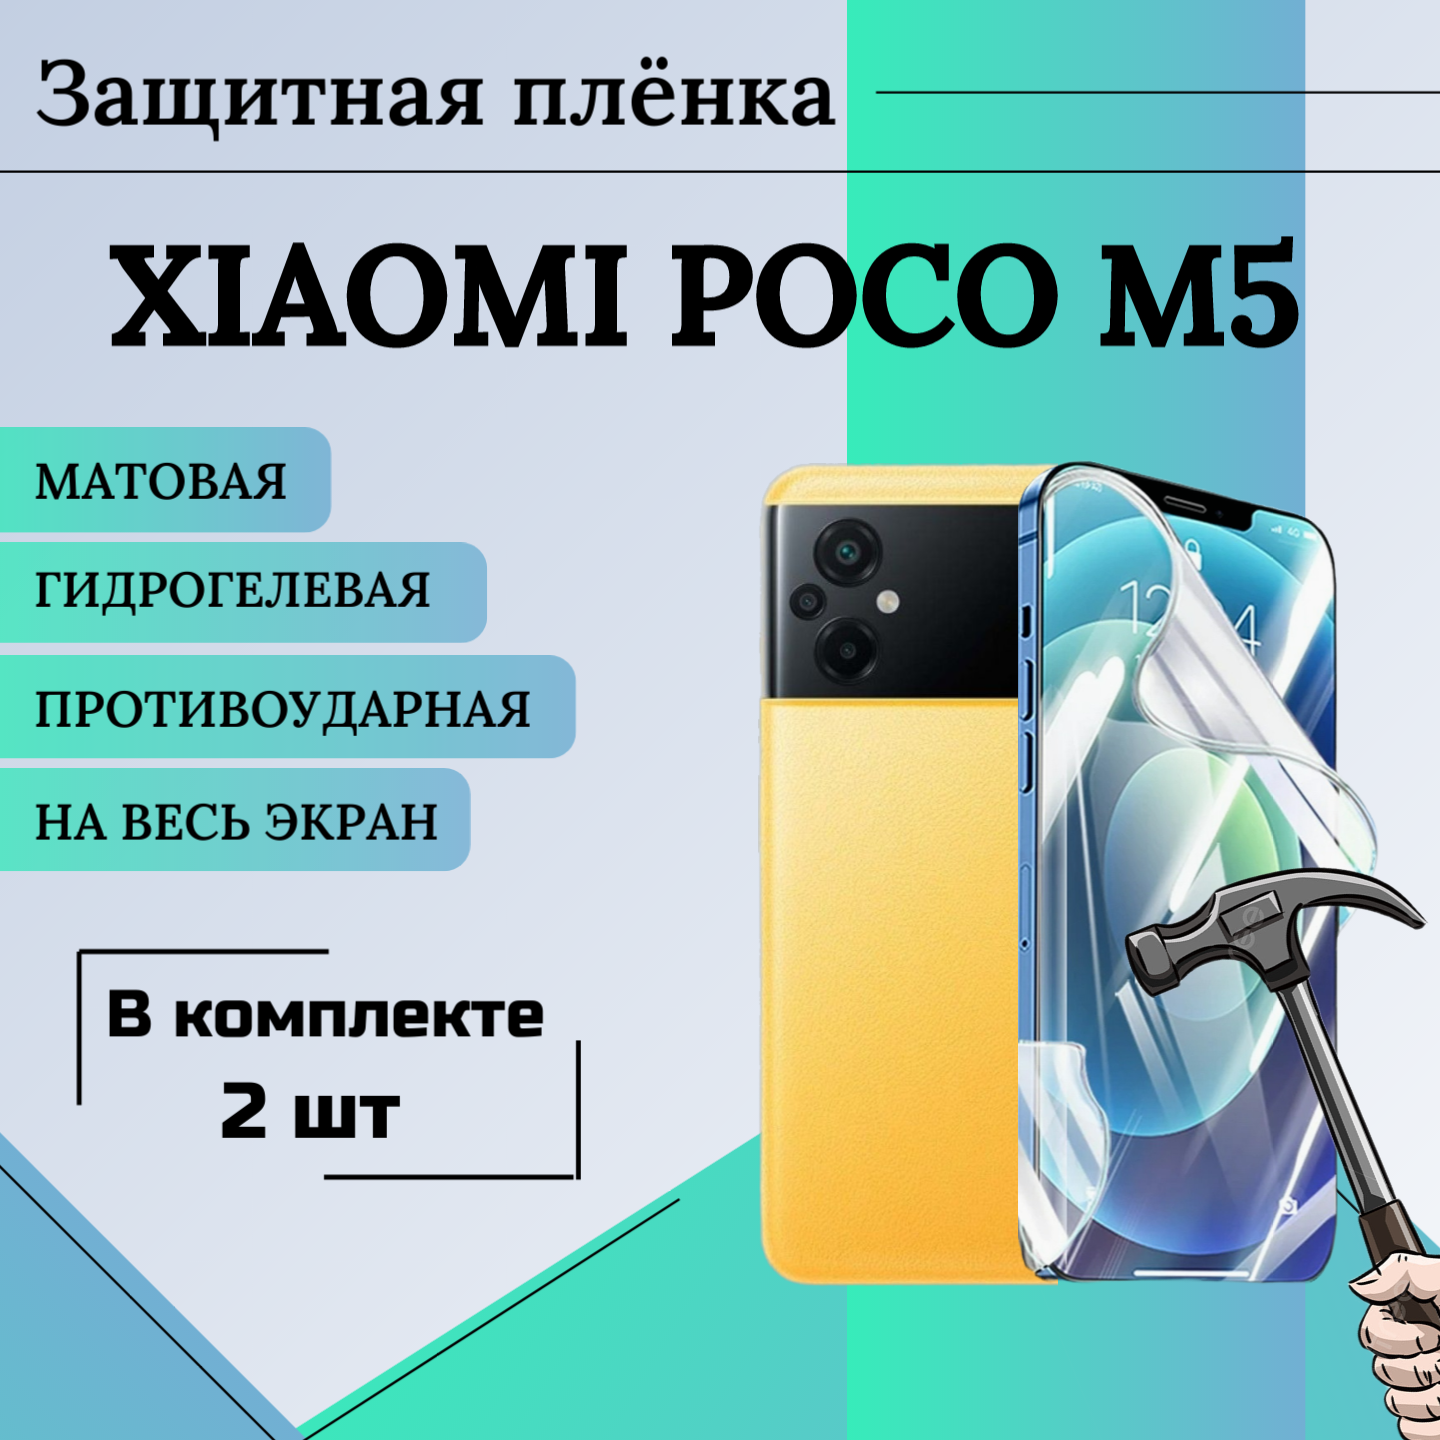 Гидрогелевая пленка XIAOMI POCO M5 2шт защитная матовая анти отпечаток на весь экран